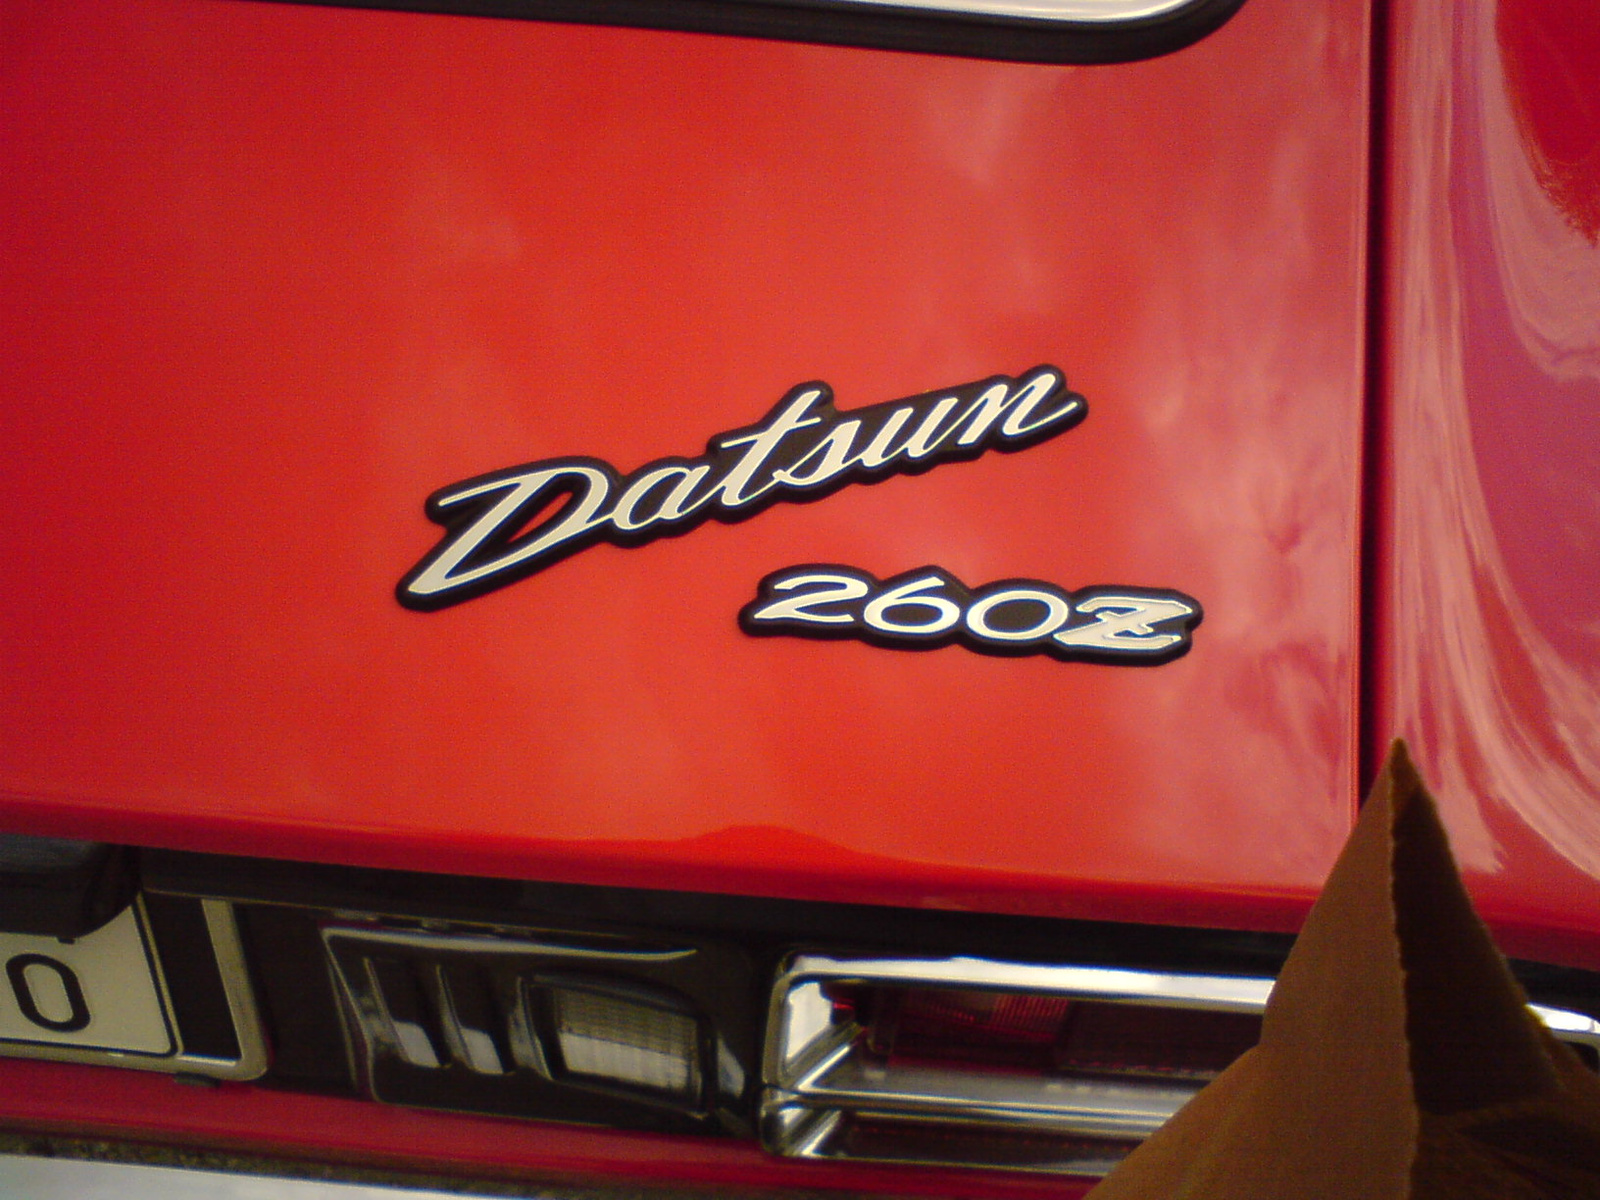 Datsun 260Z felirat